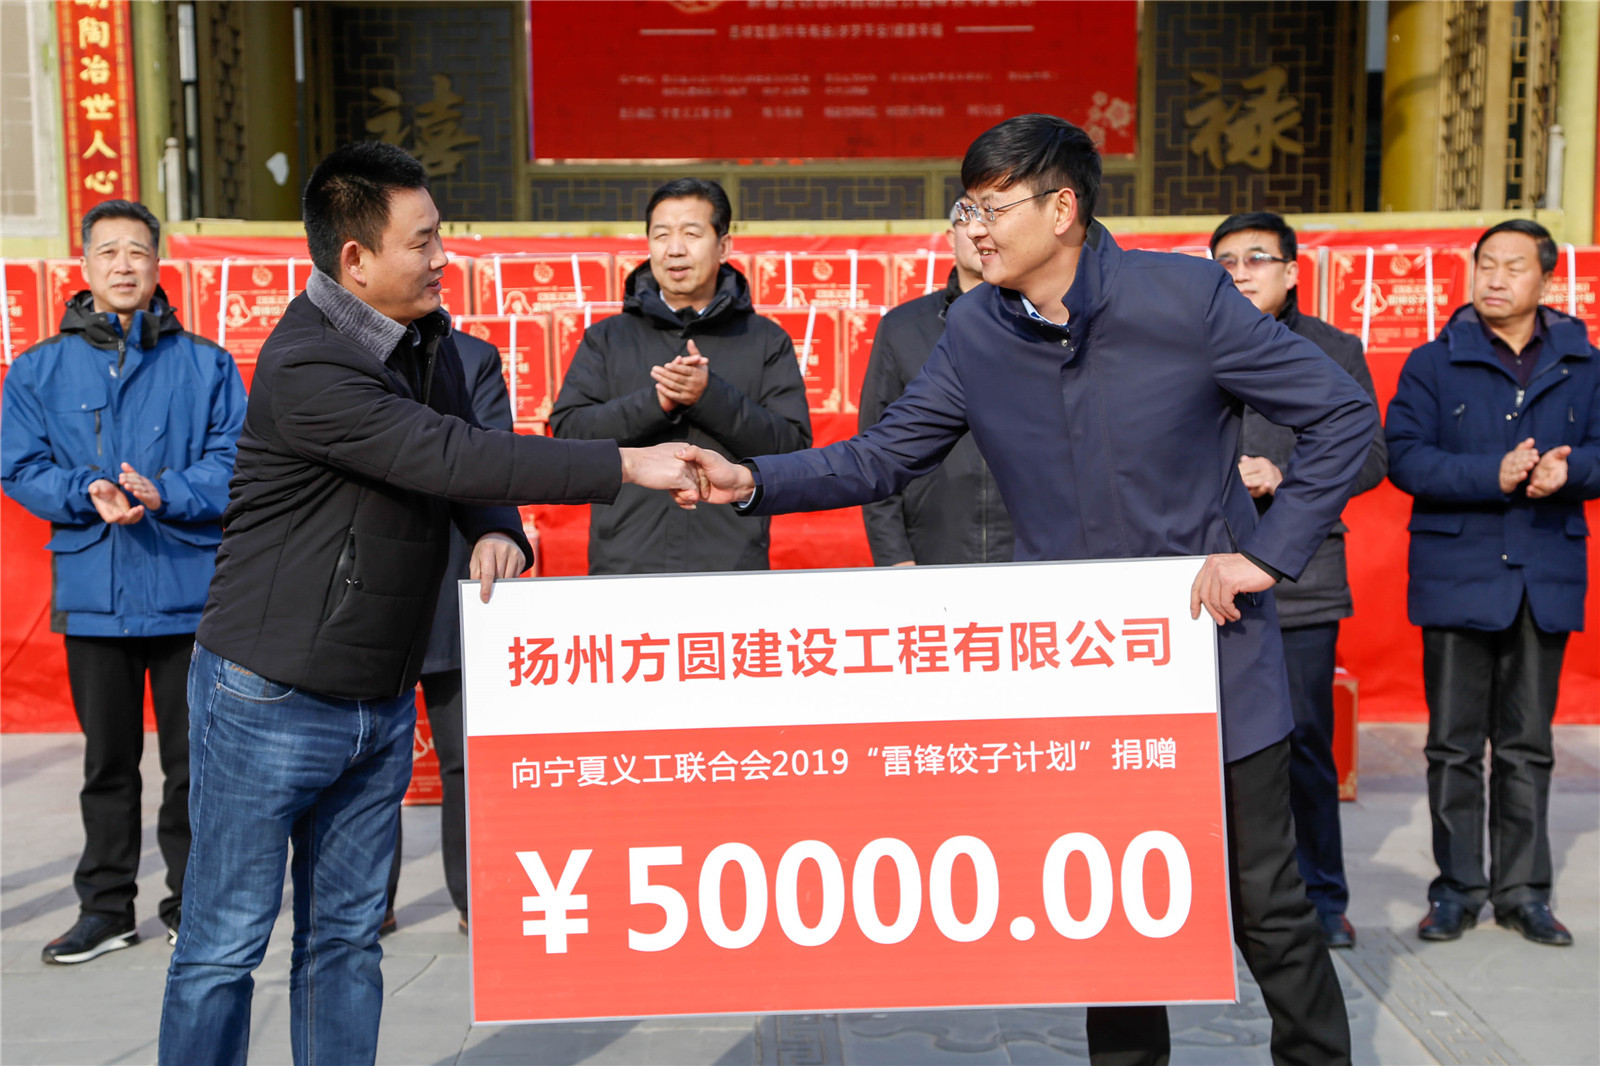 扬州方圆建设工程有限公司为项目捐赠5万元.jpg